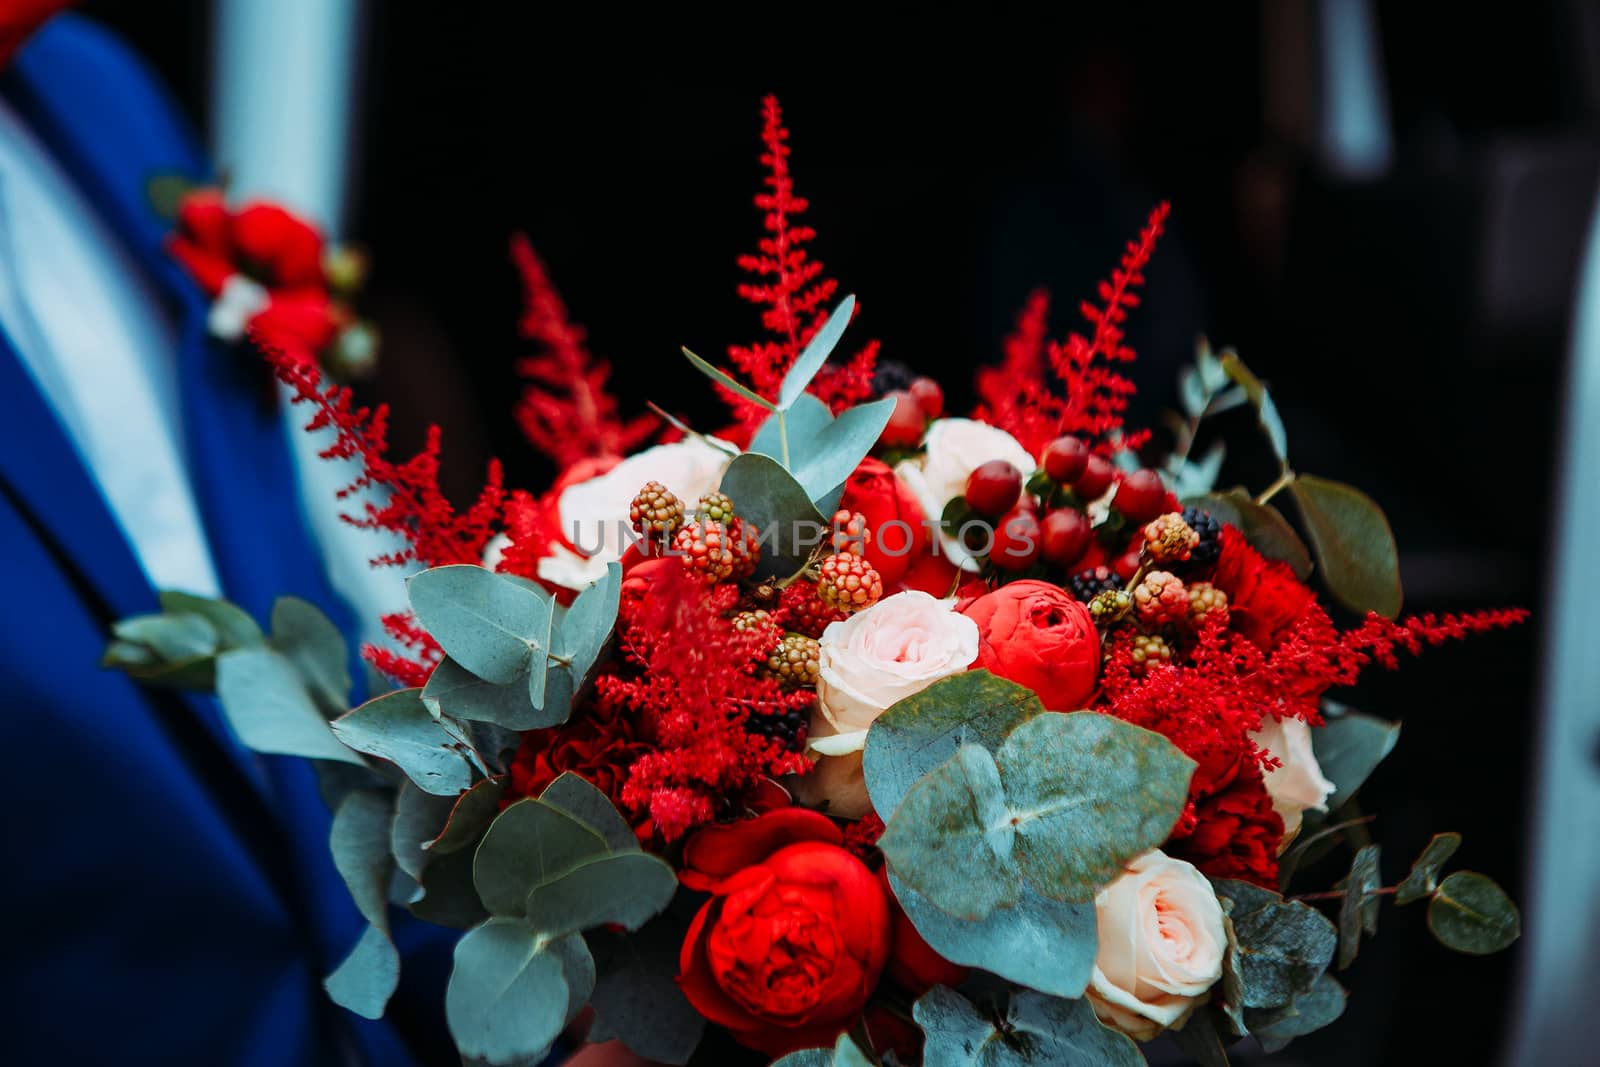 Wedding bouquet in the hands of the groom